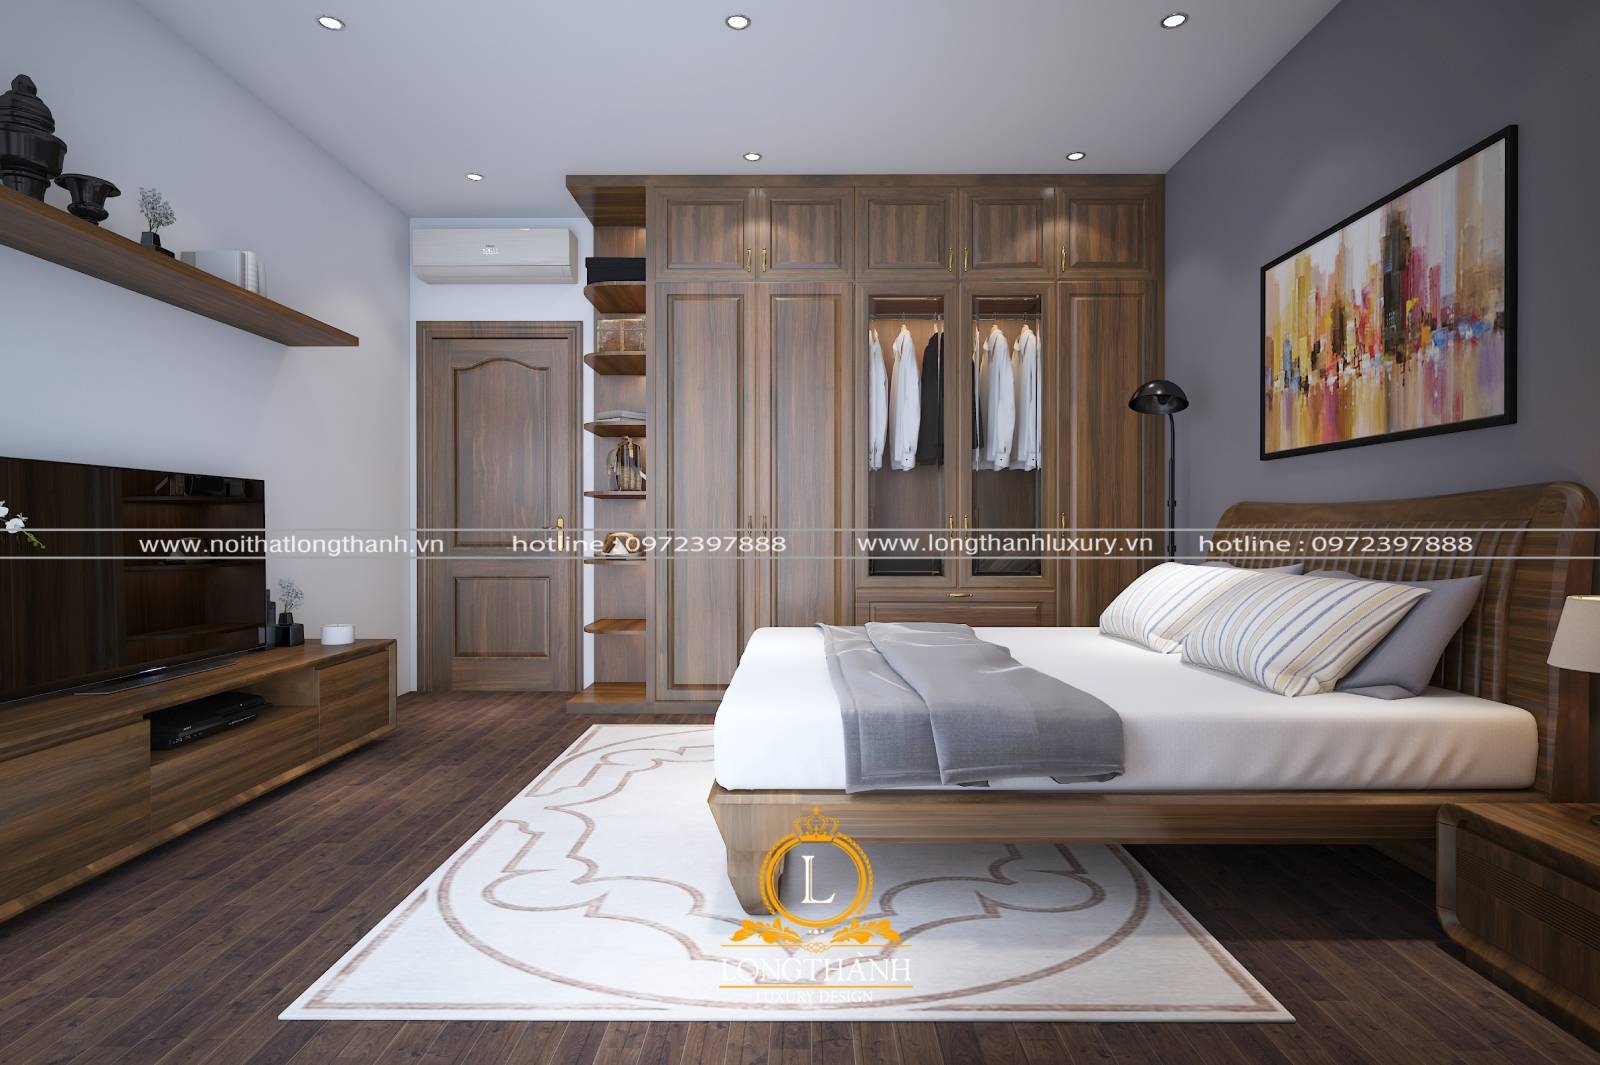 Sử dụng gam màu nâu trầm của gỗ làm cho phòng ngủ hiện đại có diện tích rộng thêm ấm cúng hơn